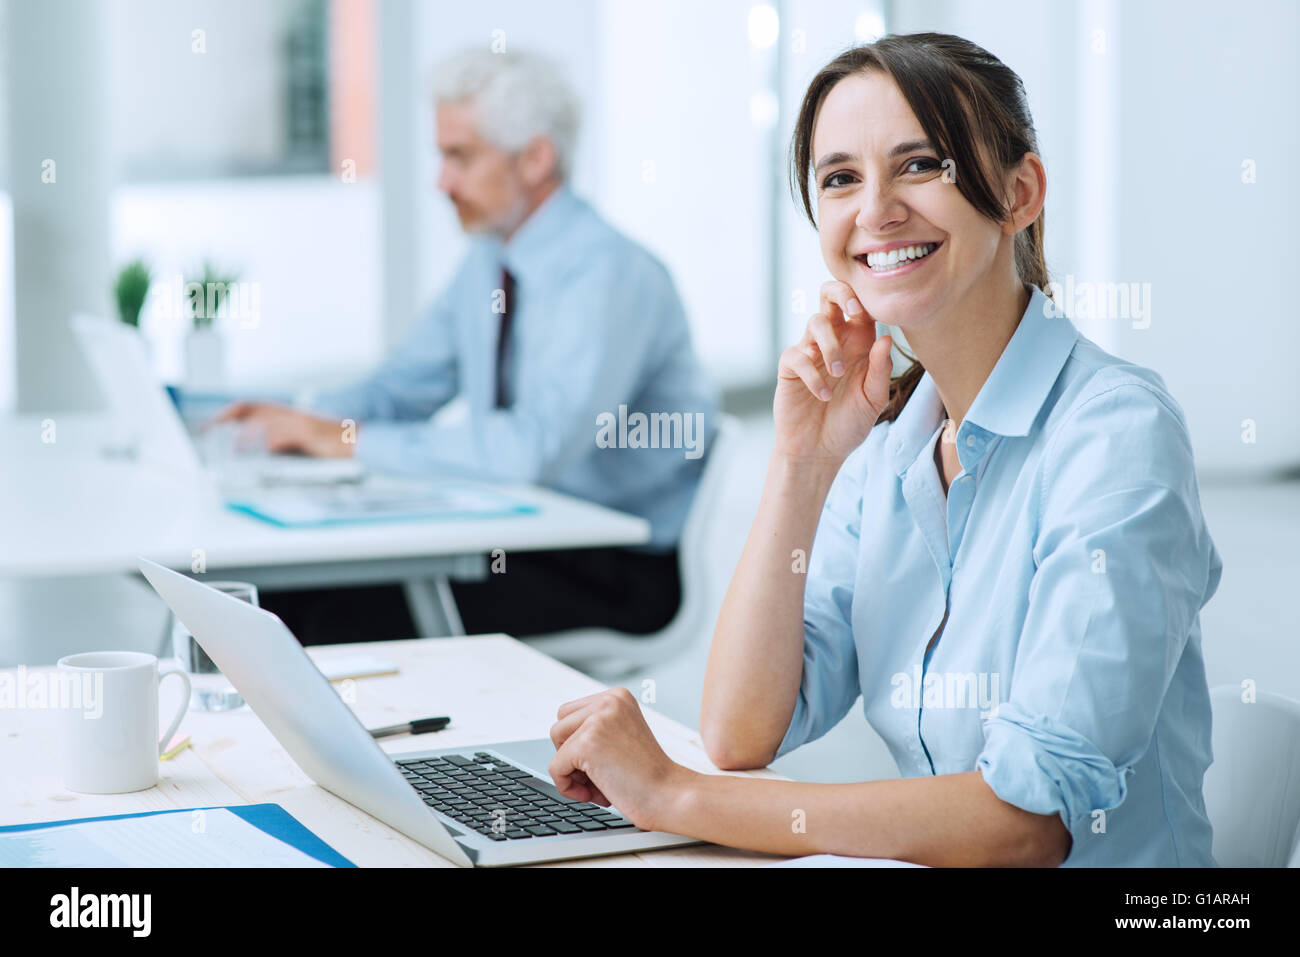 Smiling young business woman sitting at Office 24 et travailler avec un ordinateur portable, elle est looking at camera Banque D'Images